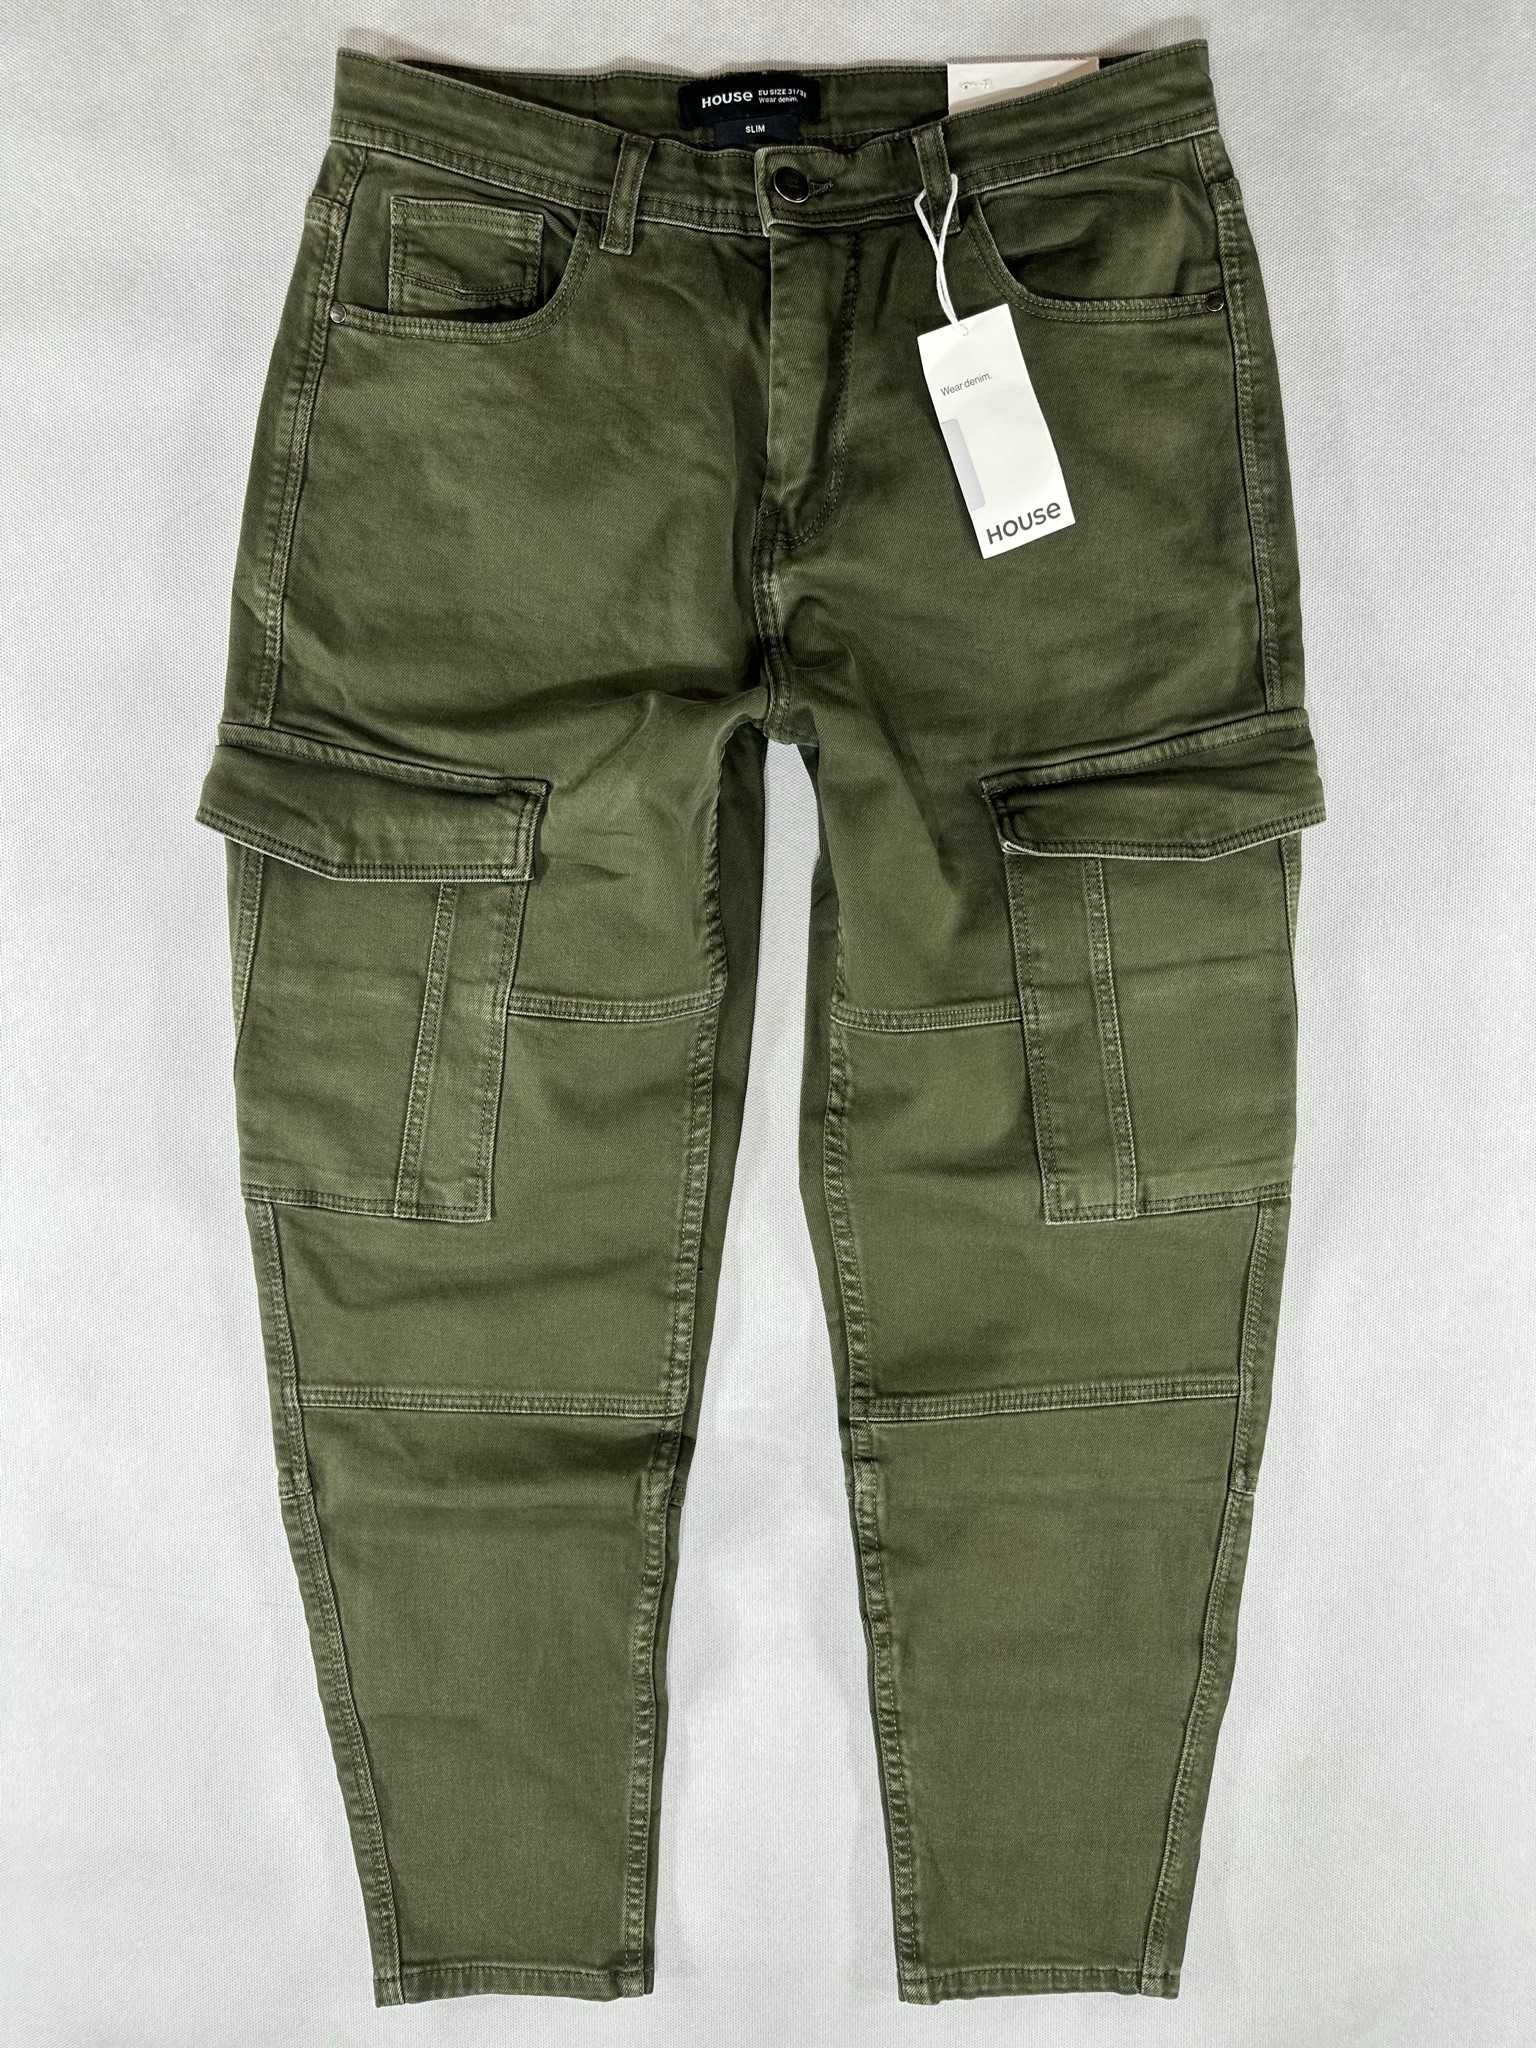 HOUSE jeans khaki bojówki męskie cargo slim fit W34L32 88cm